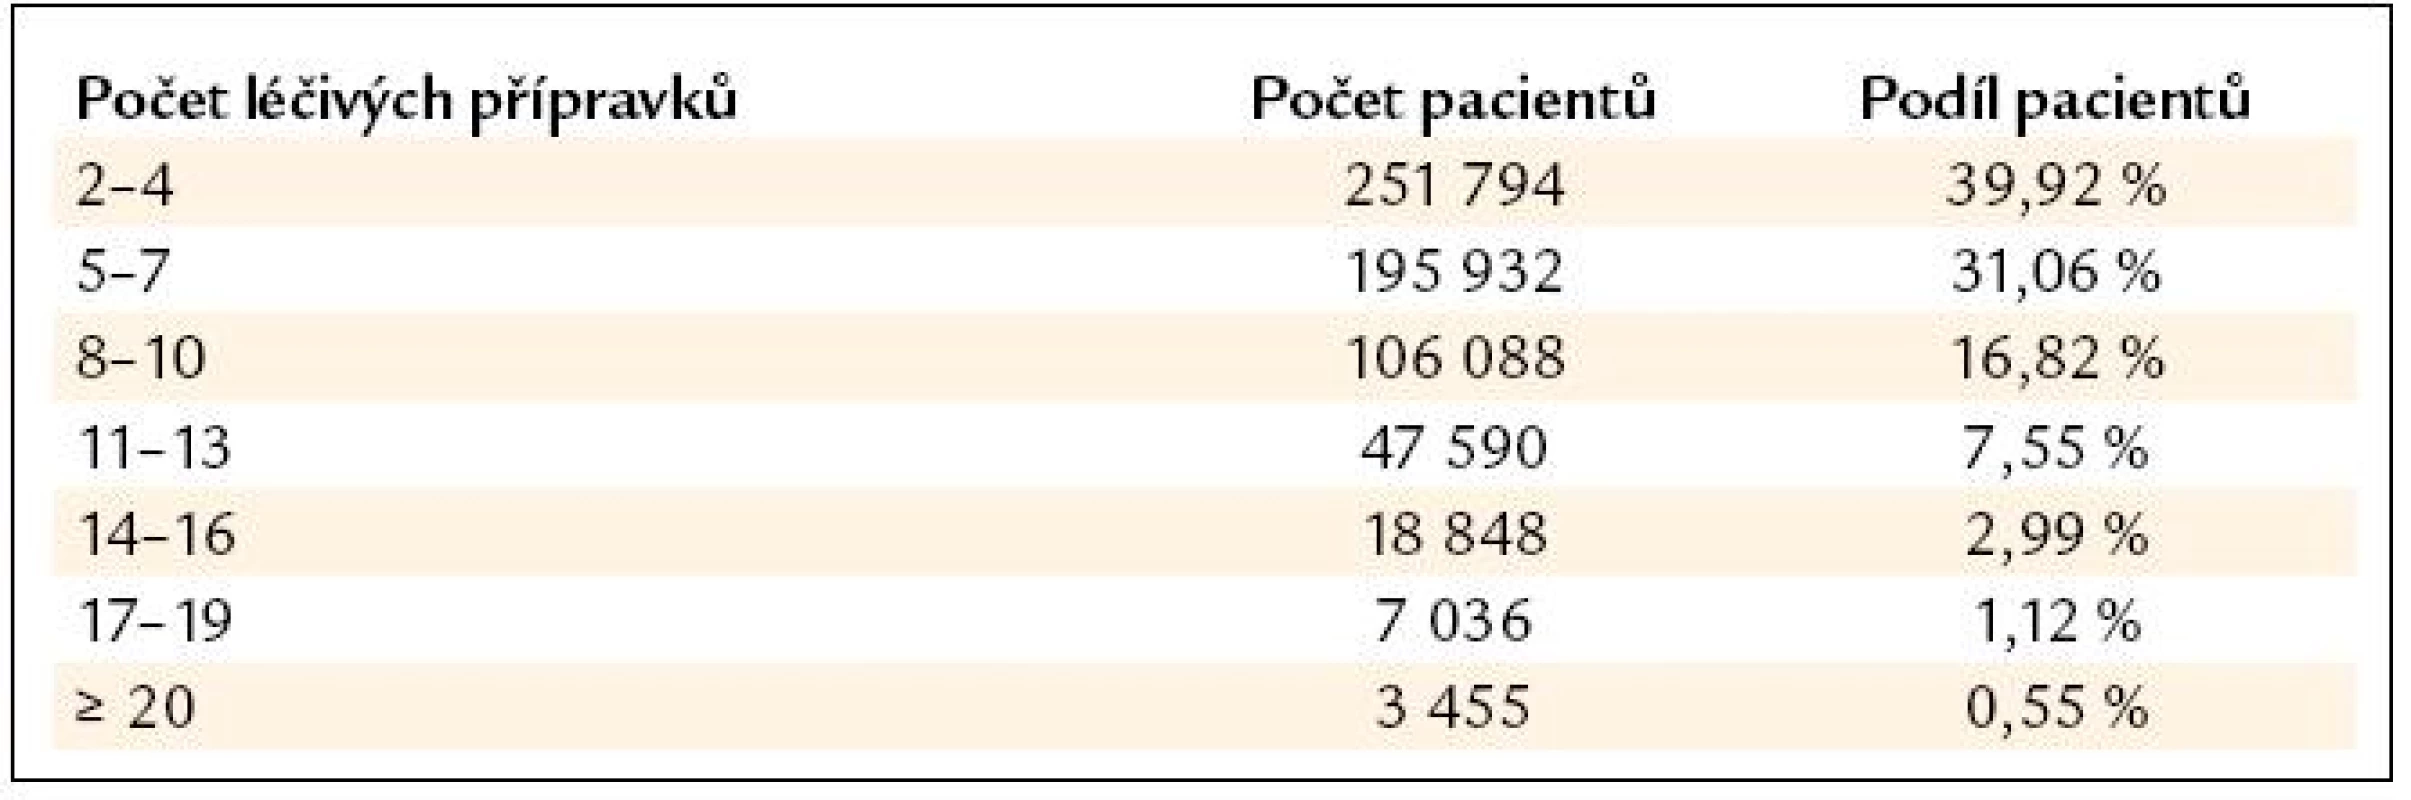 Počty pacientů podle počtů současně užívaných léčivých přípravků (dle [13]).